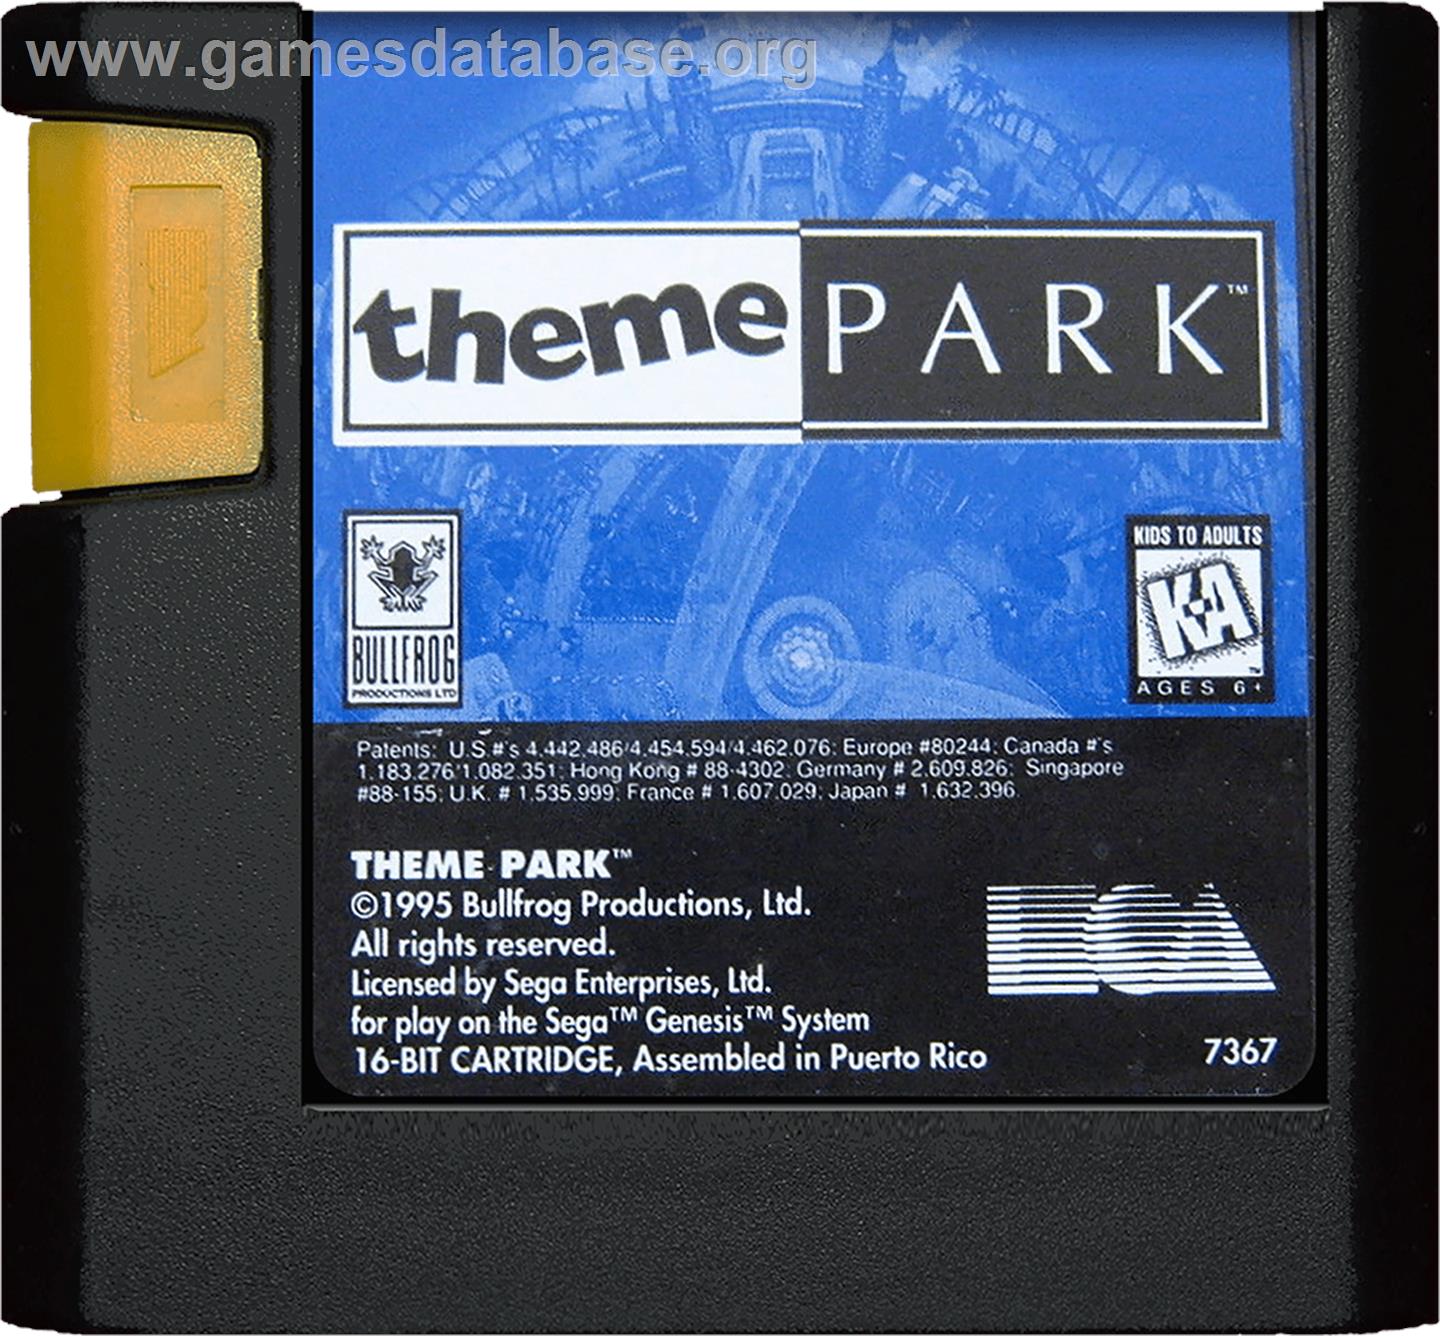 Theme Park - Sega Genesis - Artwork - Cartridge